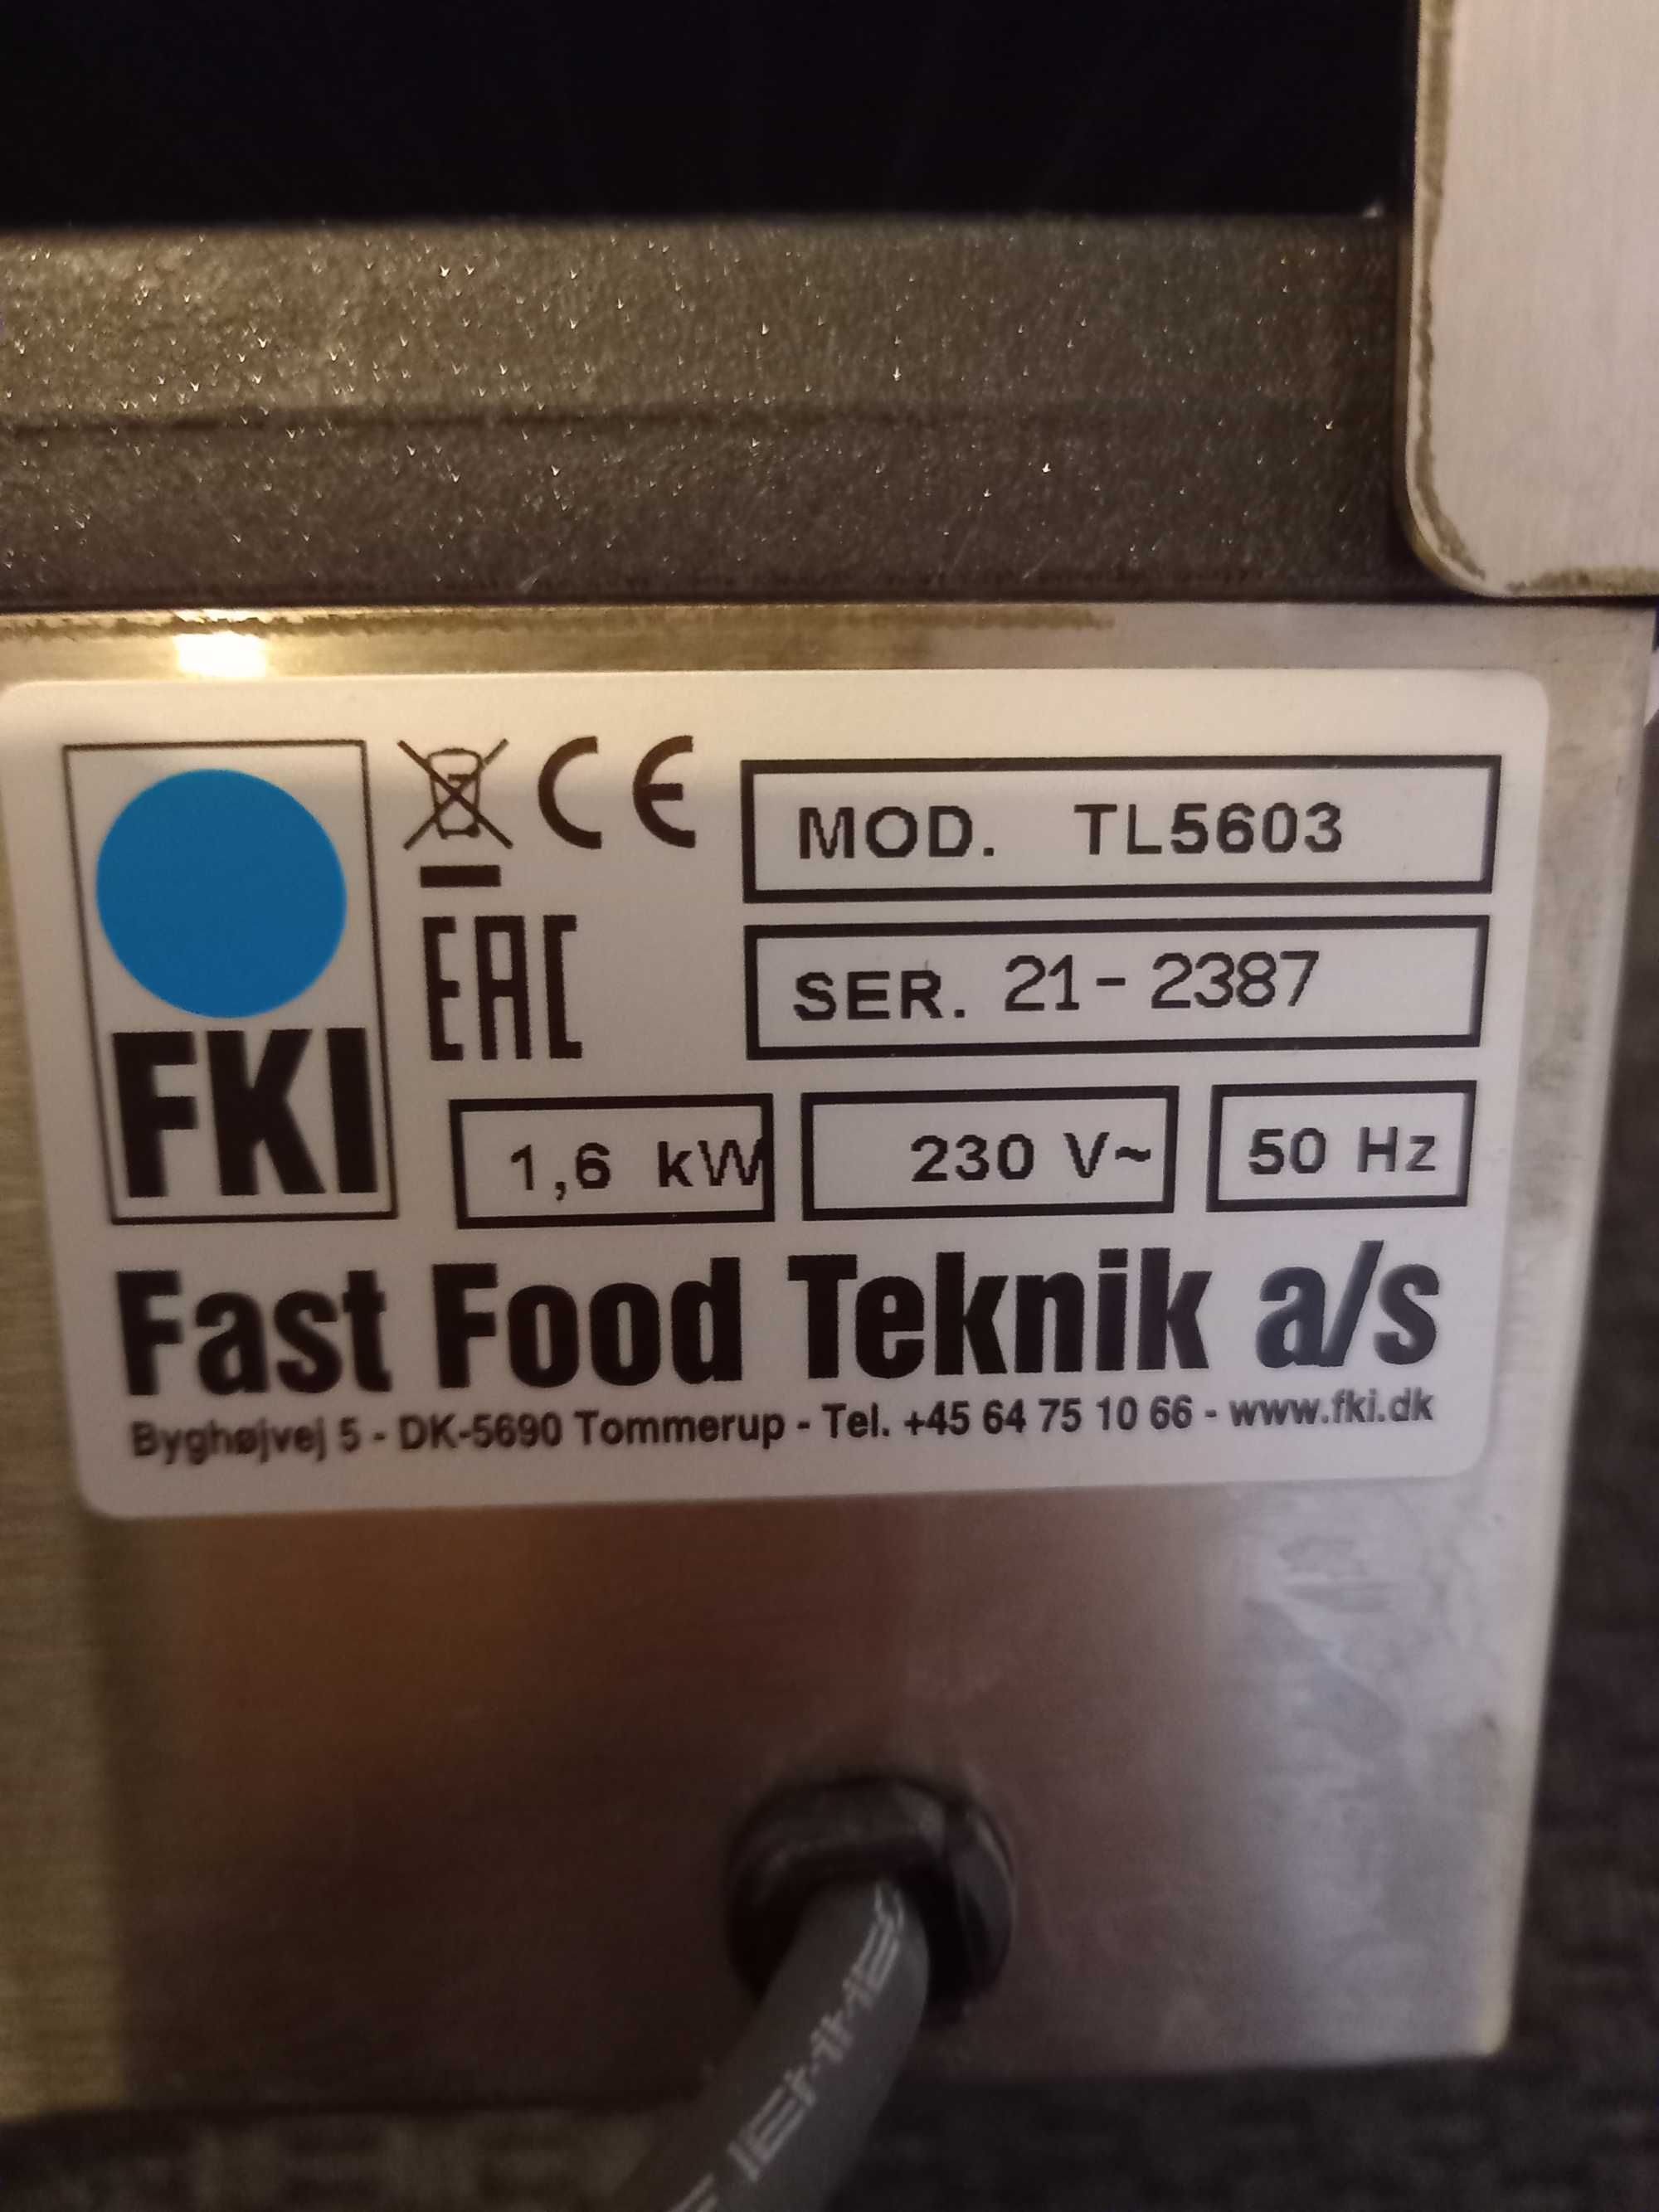 Profesjonalny Opiekacz/Grill Elektryczny FKI TL5603 1,6 kw Super Stan